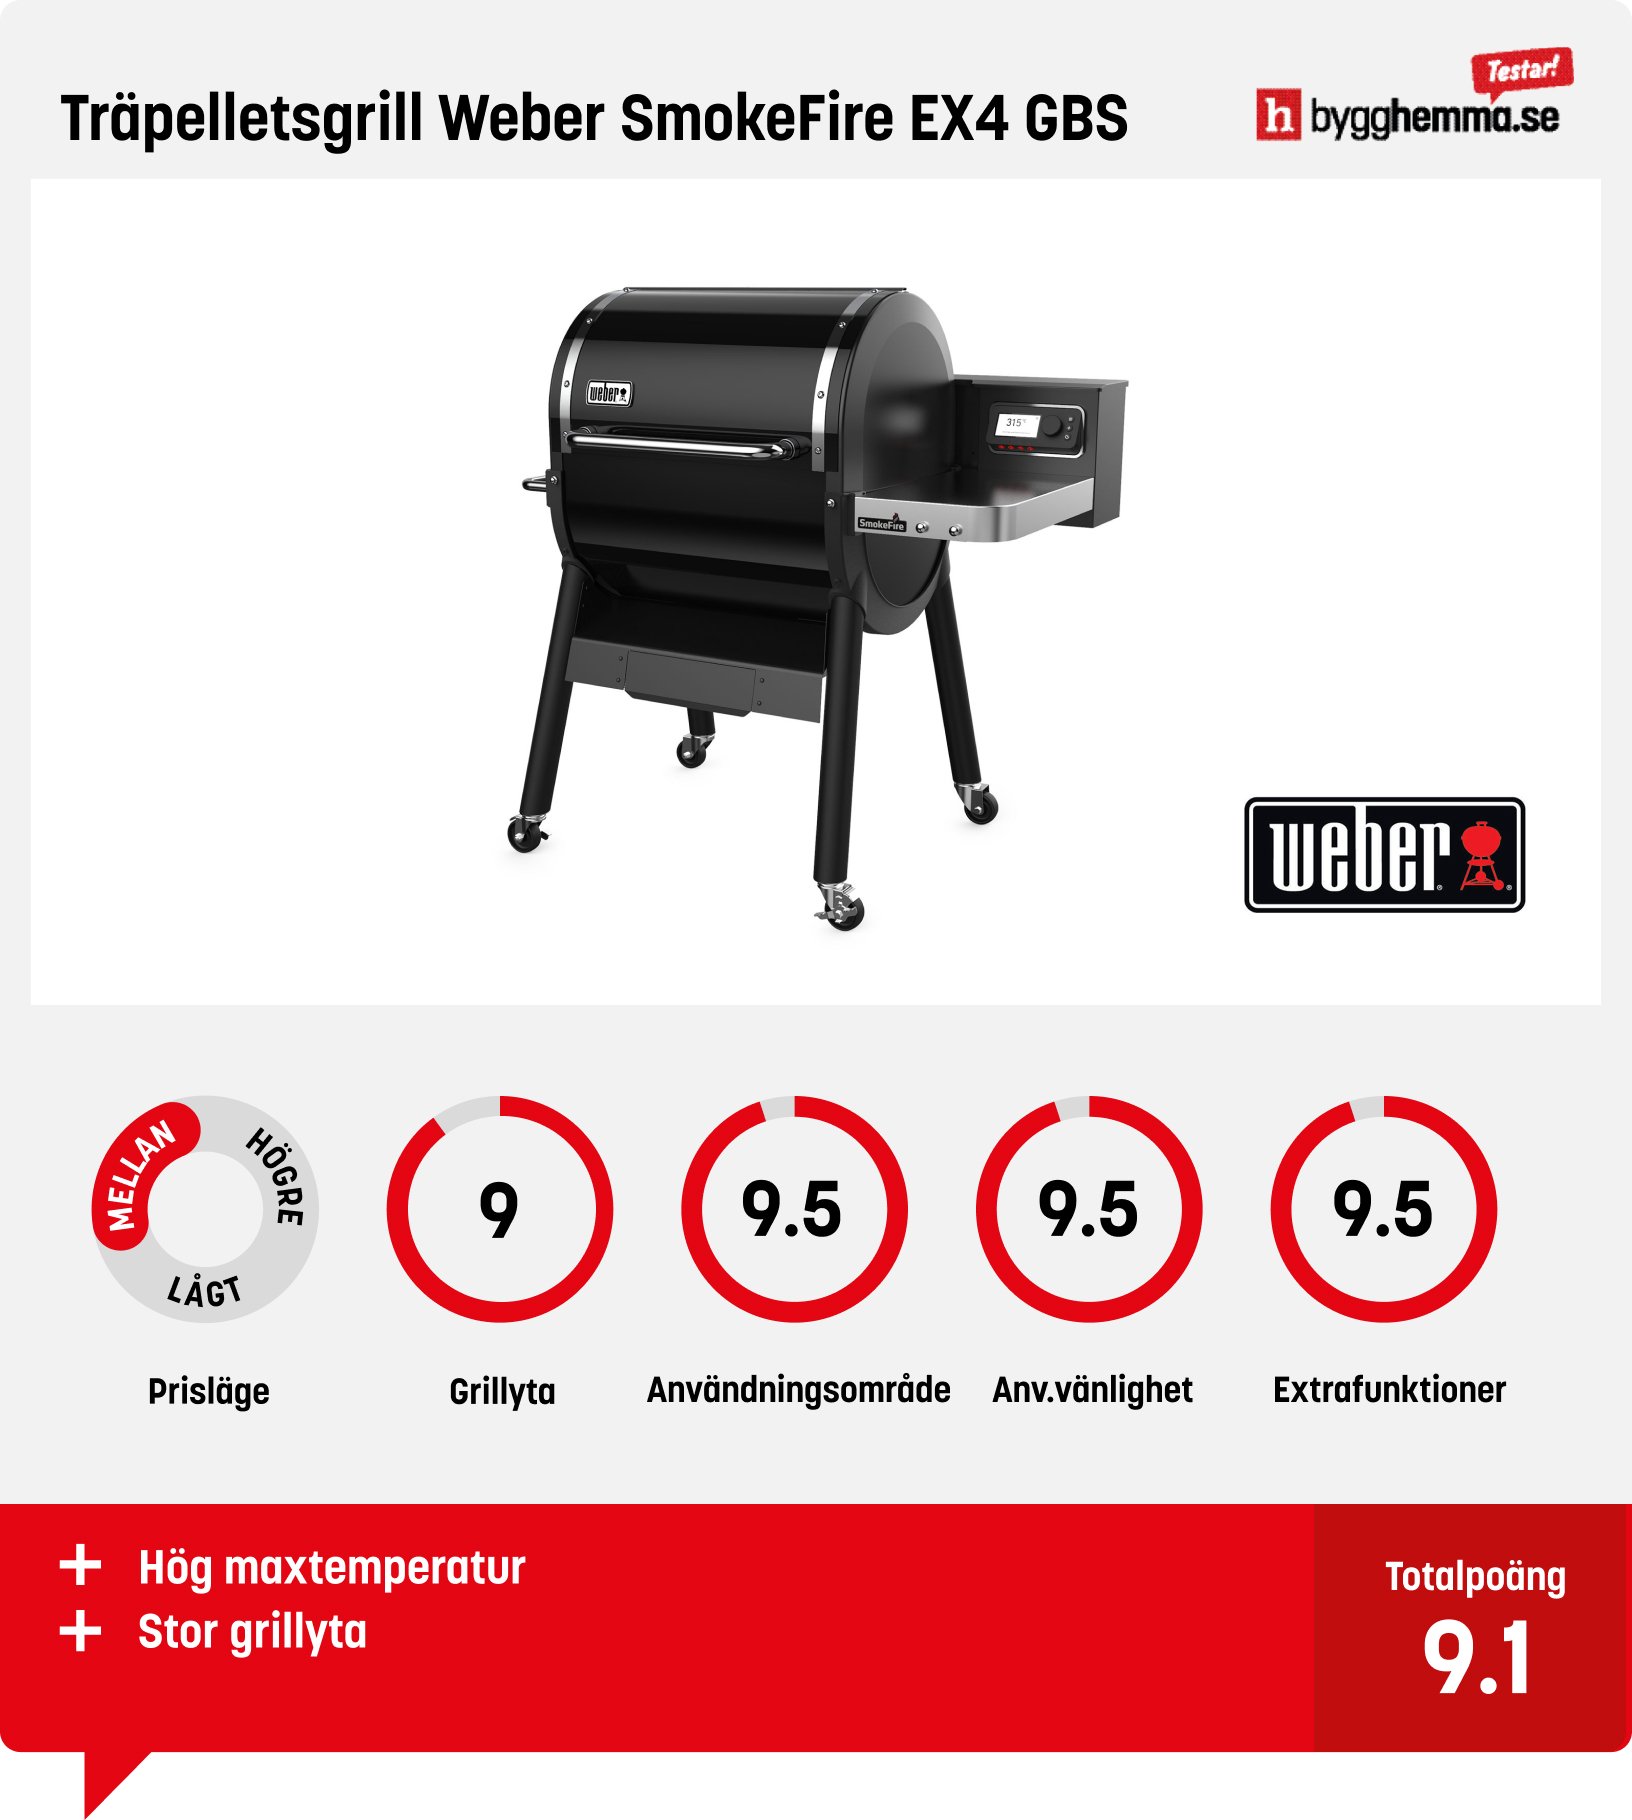 Pelletsgrill test - Träpelletsgrill Weber SmokeFire EX4 GBS